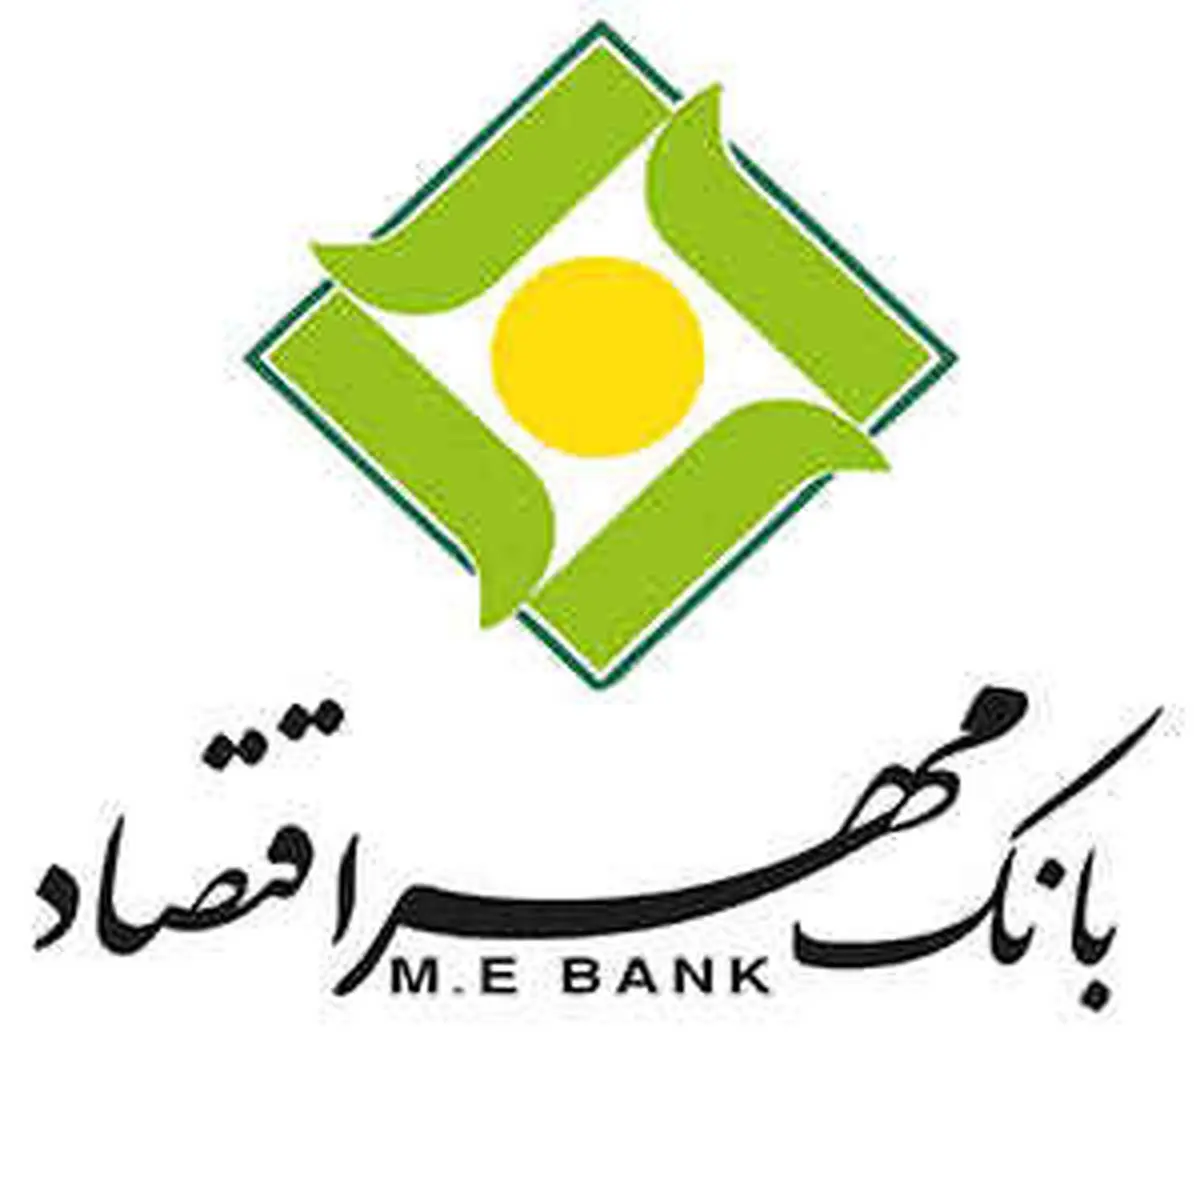 بانک مهر اقتصاد درسال95 استخدام میکند